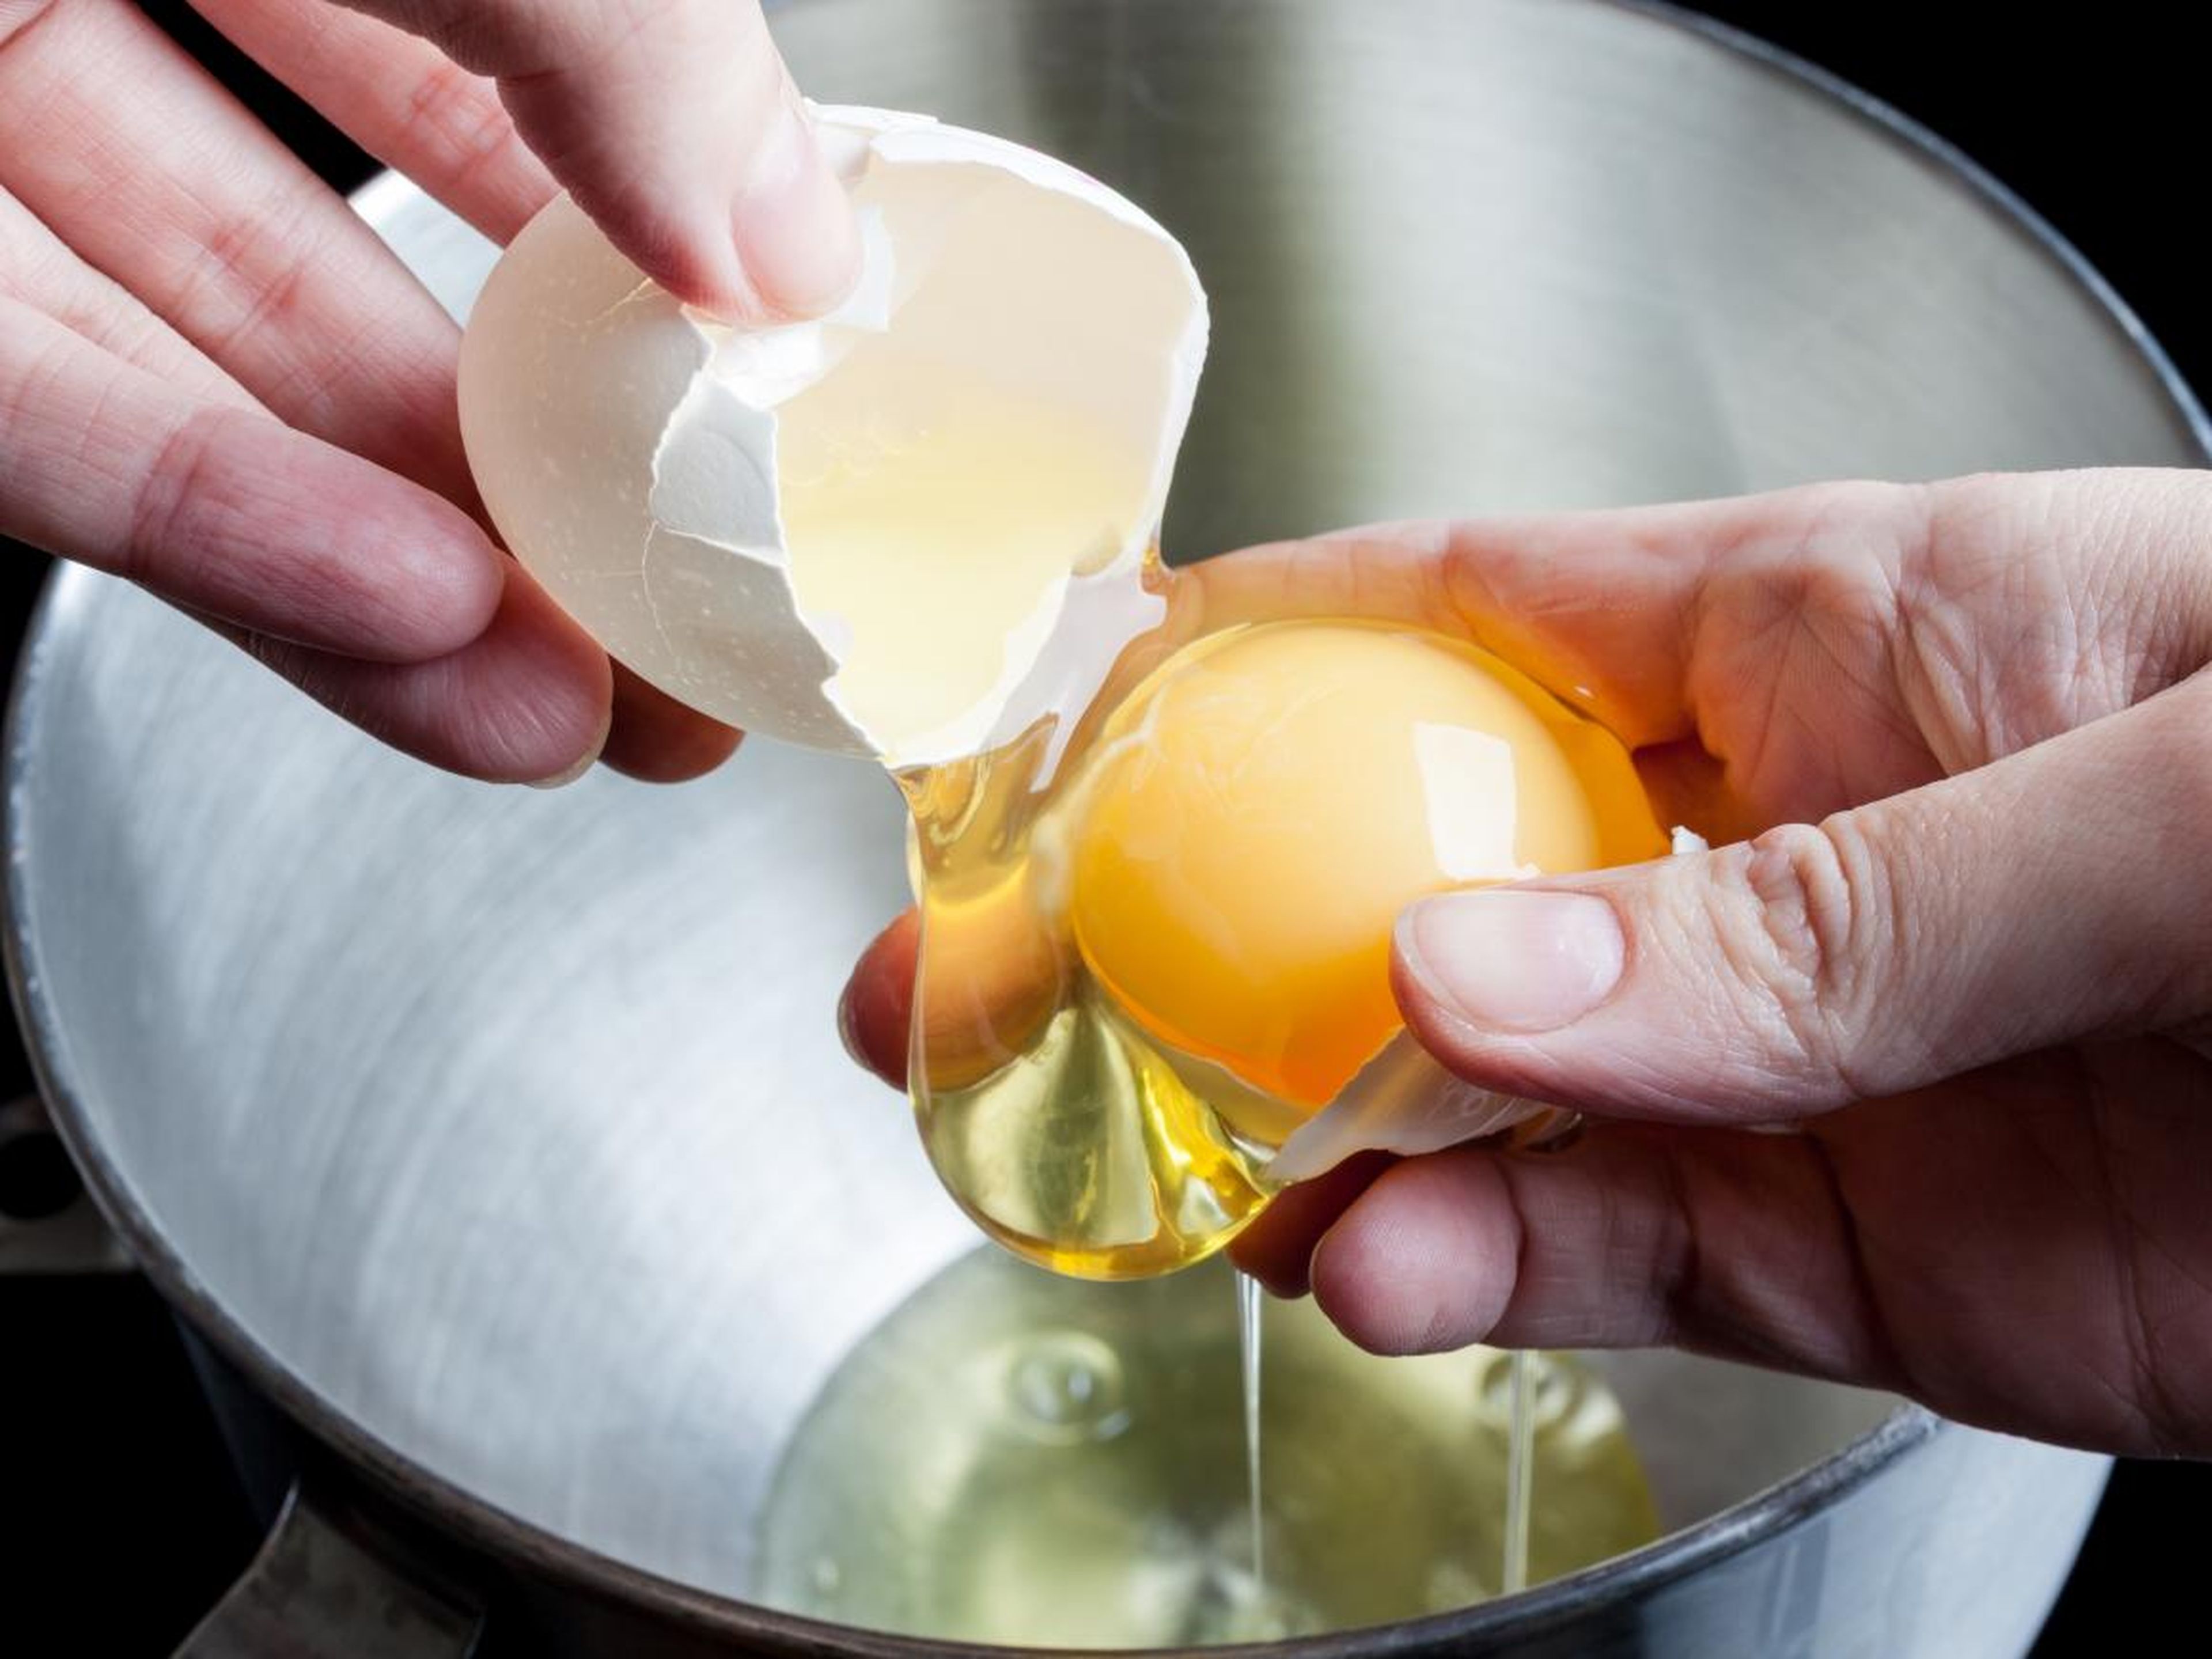 Las claras de huevo son una buena fuente de proteínas.